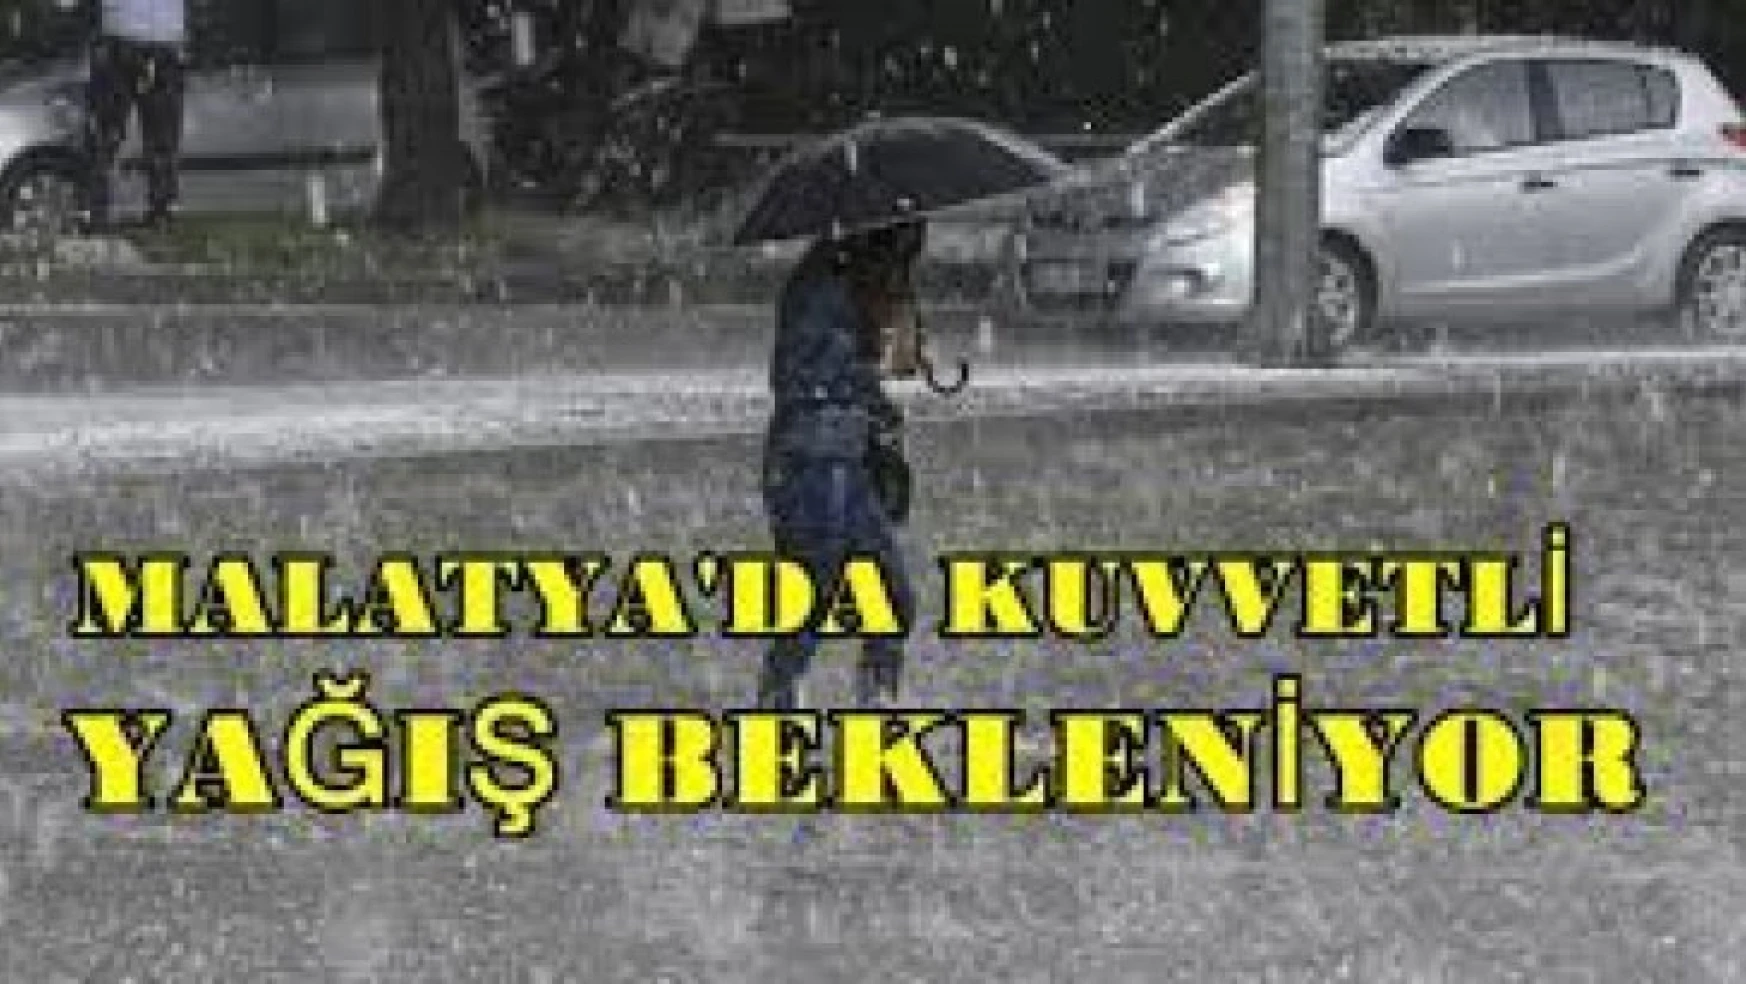 Malatya'nın Güney Kesimlerinde Kuvvetli Yağış Bekleniyor!